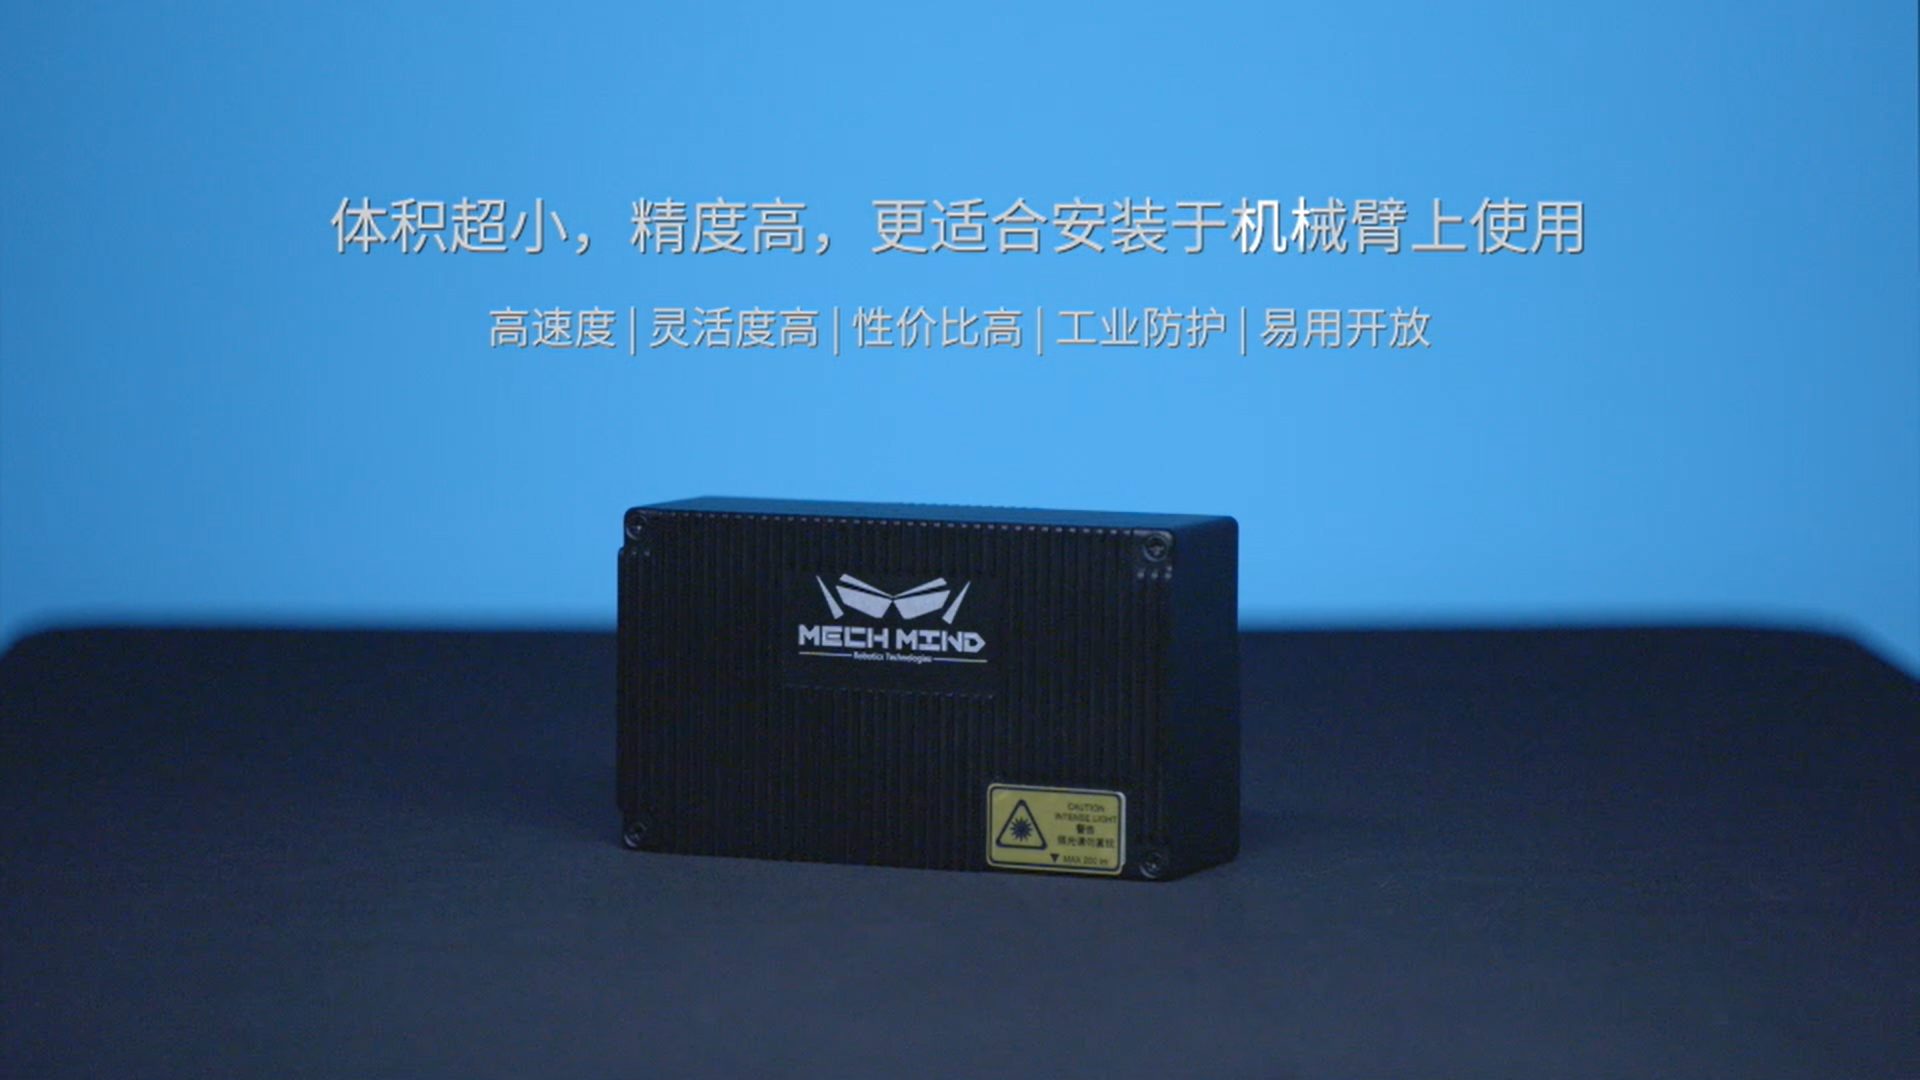 新升级Mech-Eye Nano工业级3D相机——超小体积、更高精度、更强工业防护